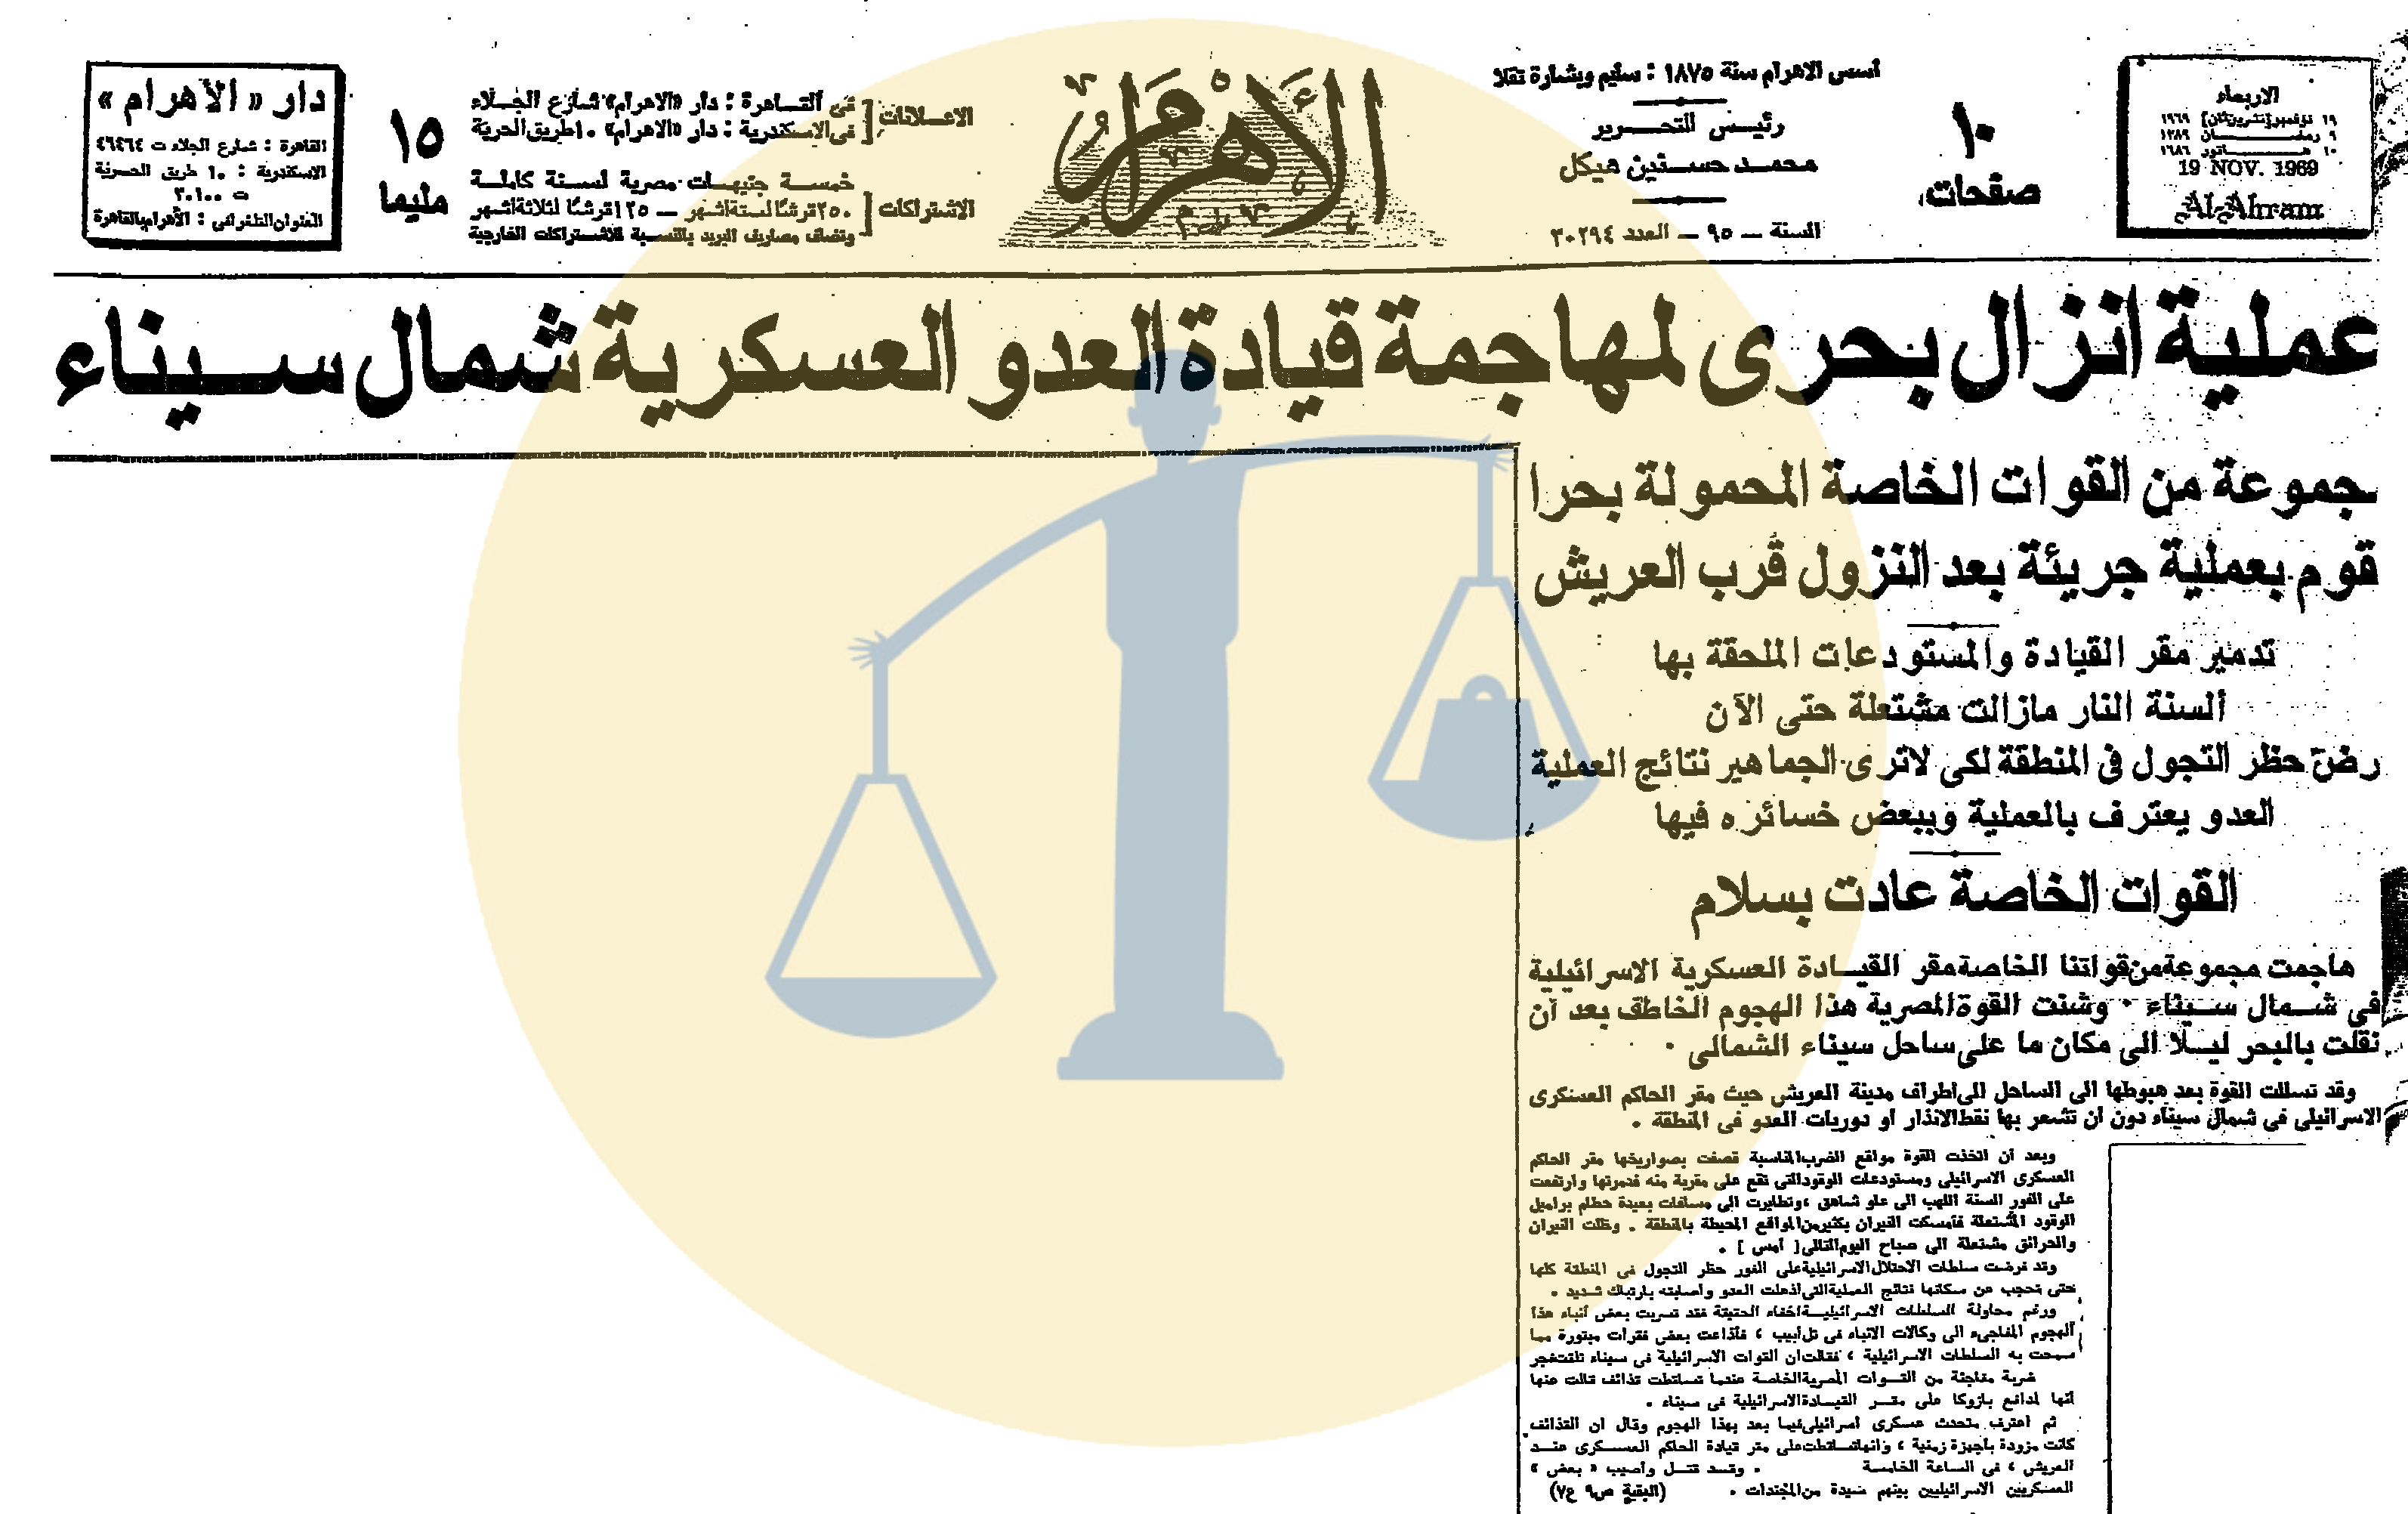 من أخبار مصر يوم الثلاثاء 9 رمضان 1389 هجري الموافق 19 نوفمبر 1969 م